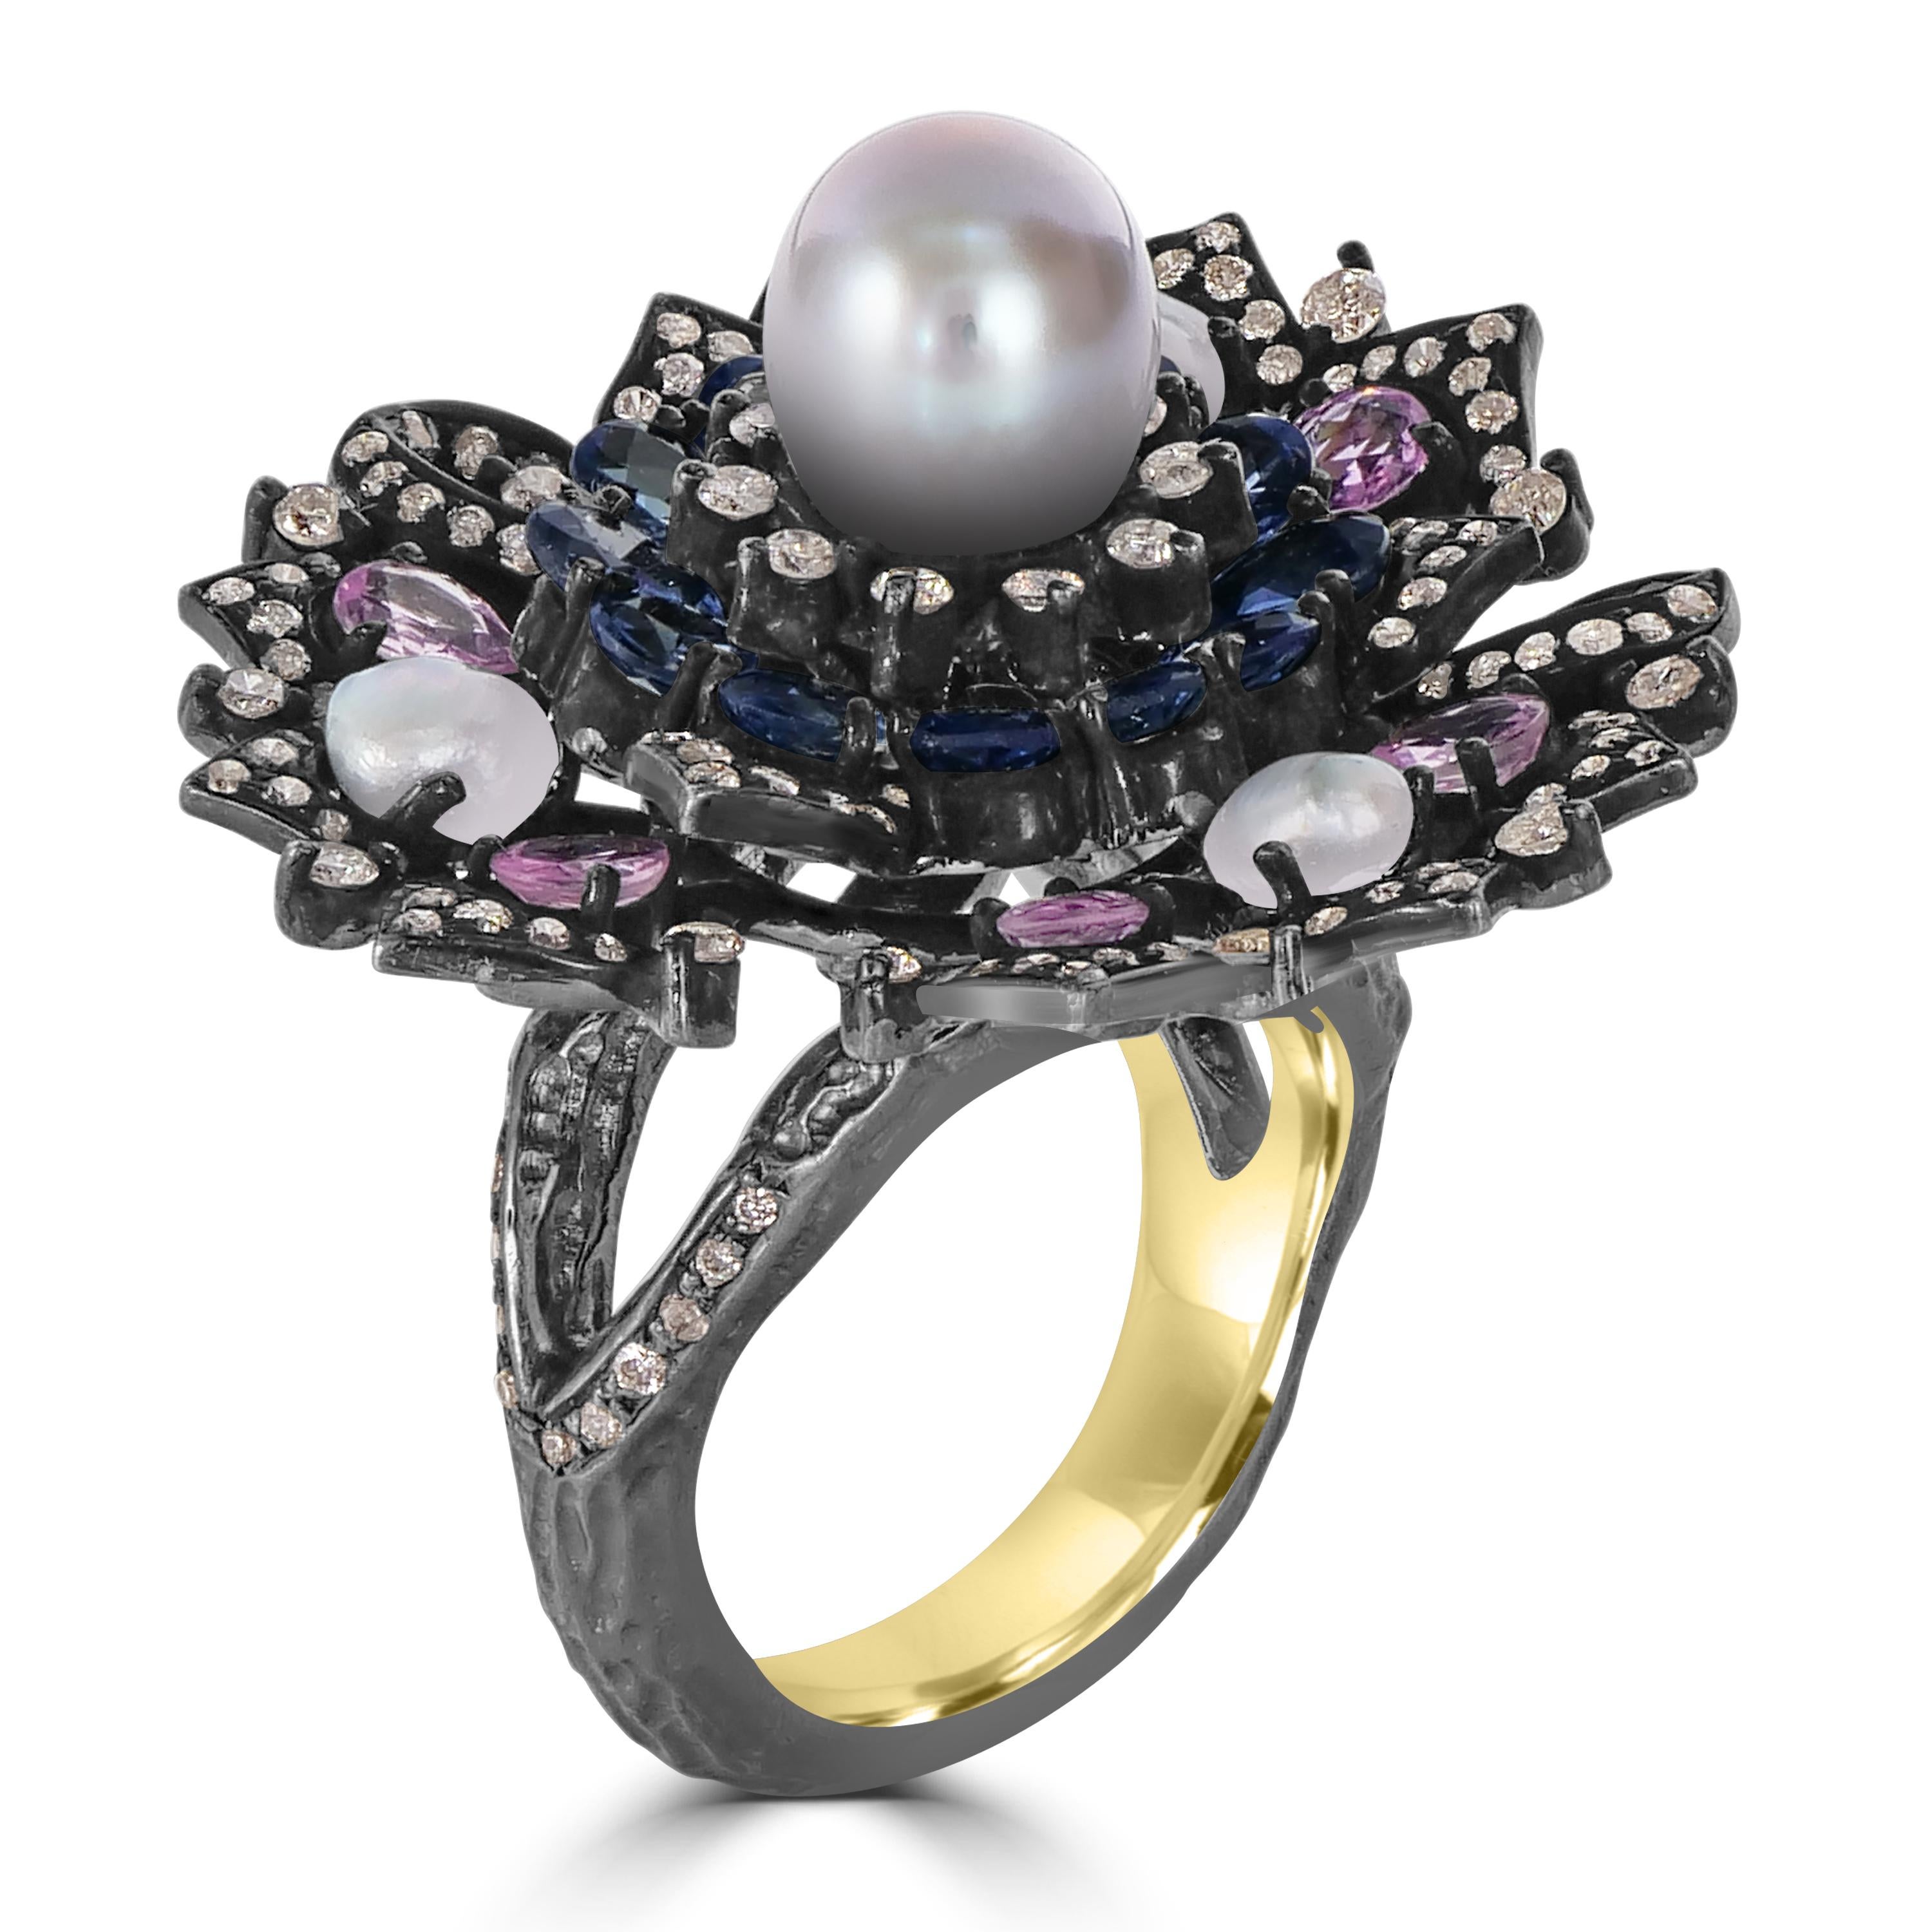 Unser exquisiter Victorian Blue and Pink Sapphire Diamond Split Shank Floral Ring ist ein fesselnder Cocktailring, der die Eleganz von blauen und rosafarbenen Saphiren mit dem zeitlosen Funkeln von Diamanten verbindet. Dieser mit Präzision und Liebe